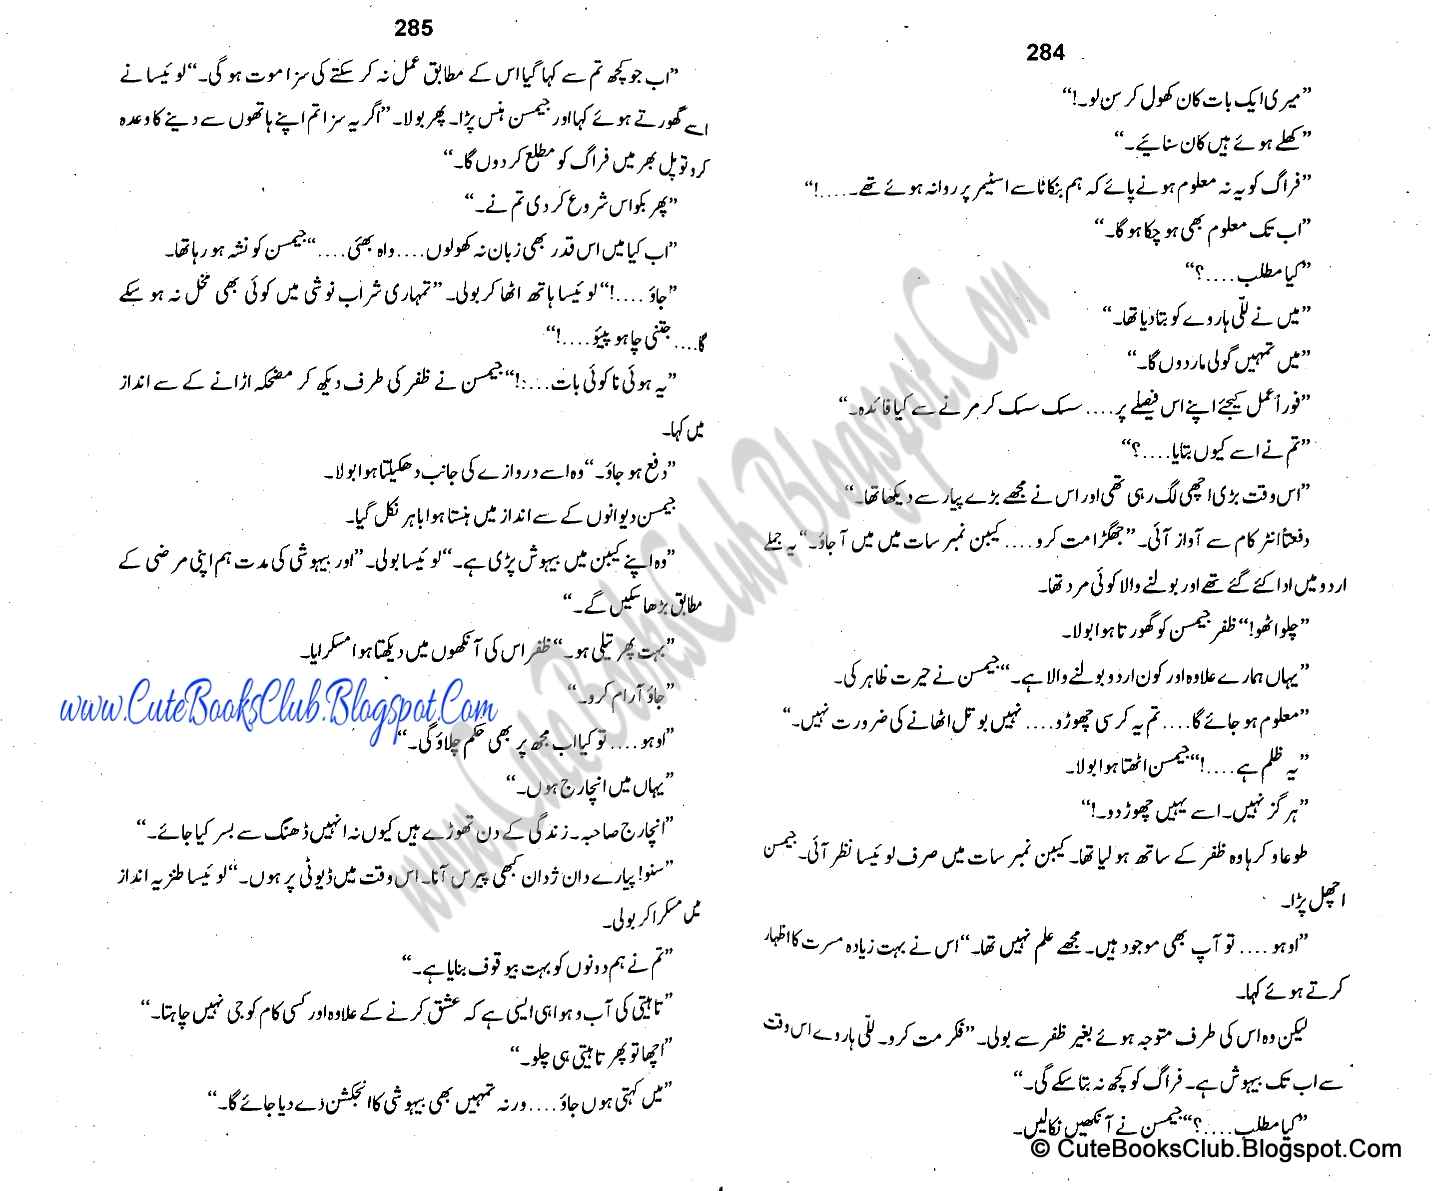 071-Zalzaly Ka Safar, Imran Series By Ibne Safi (Urdu Novel)